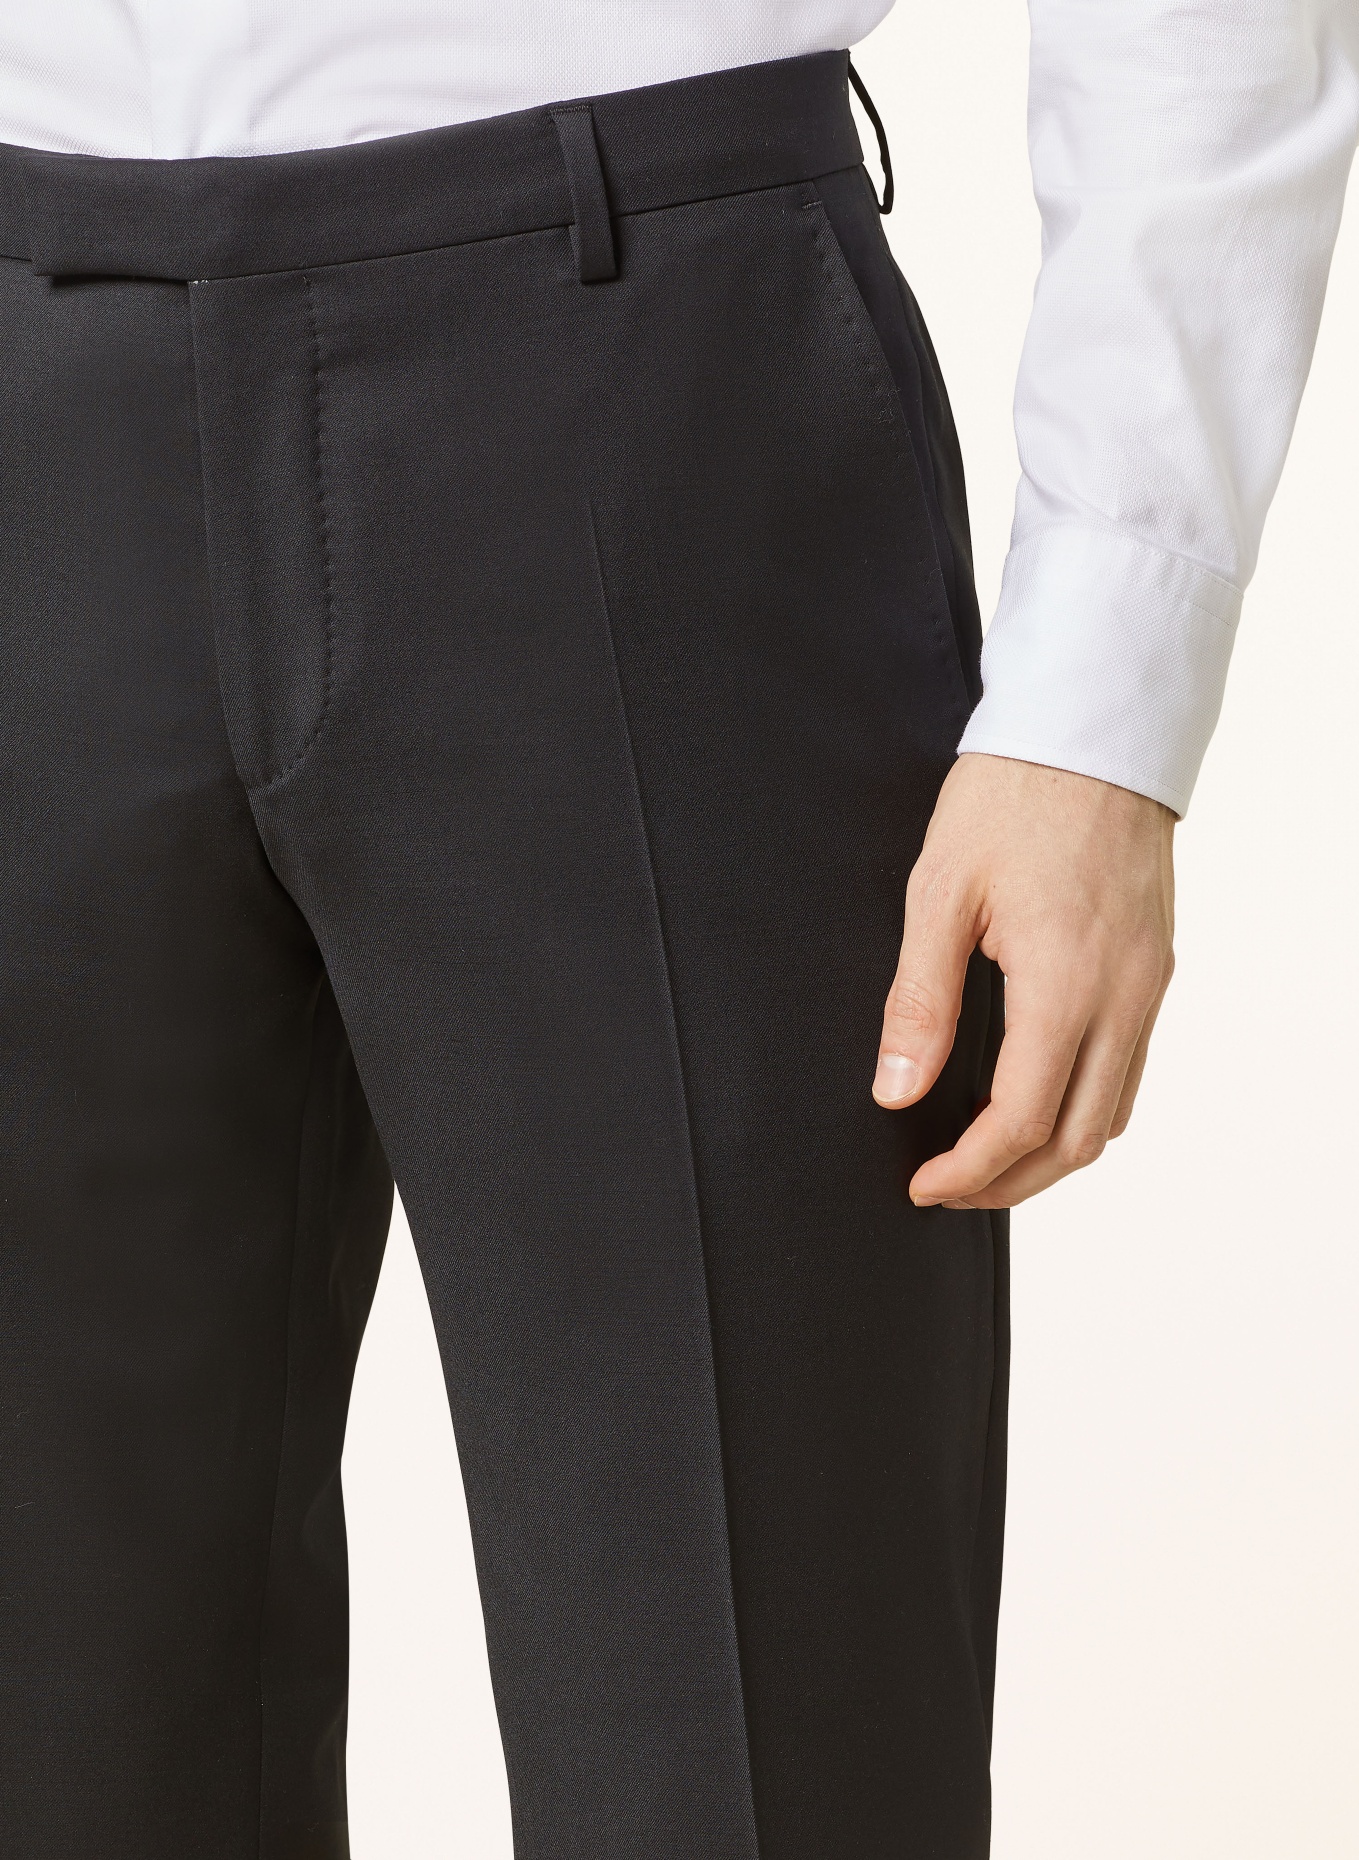 JOOP! Anzughose Slim Fit, Farbe: 001 Black                      001 (Bild 7)